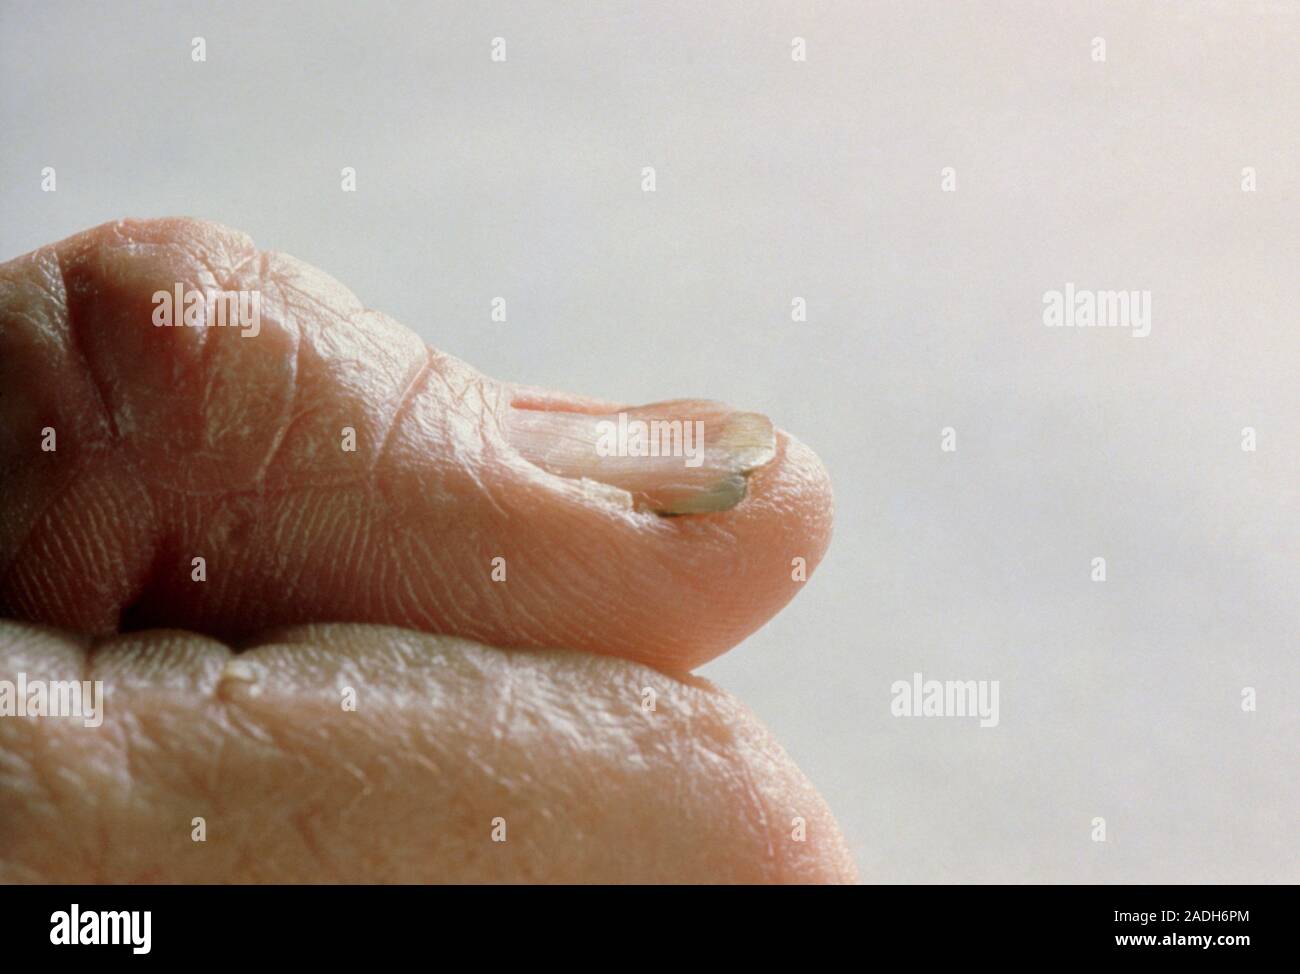 Fotografía del dedo pulgar de una persona que sufre de anemia por  deficiencia de hierro, mostrando la característica quebradizo, uñas en  forma de cuchara, una afección conocida un Fotografía de stock -